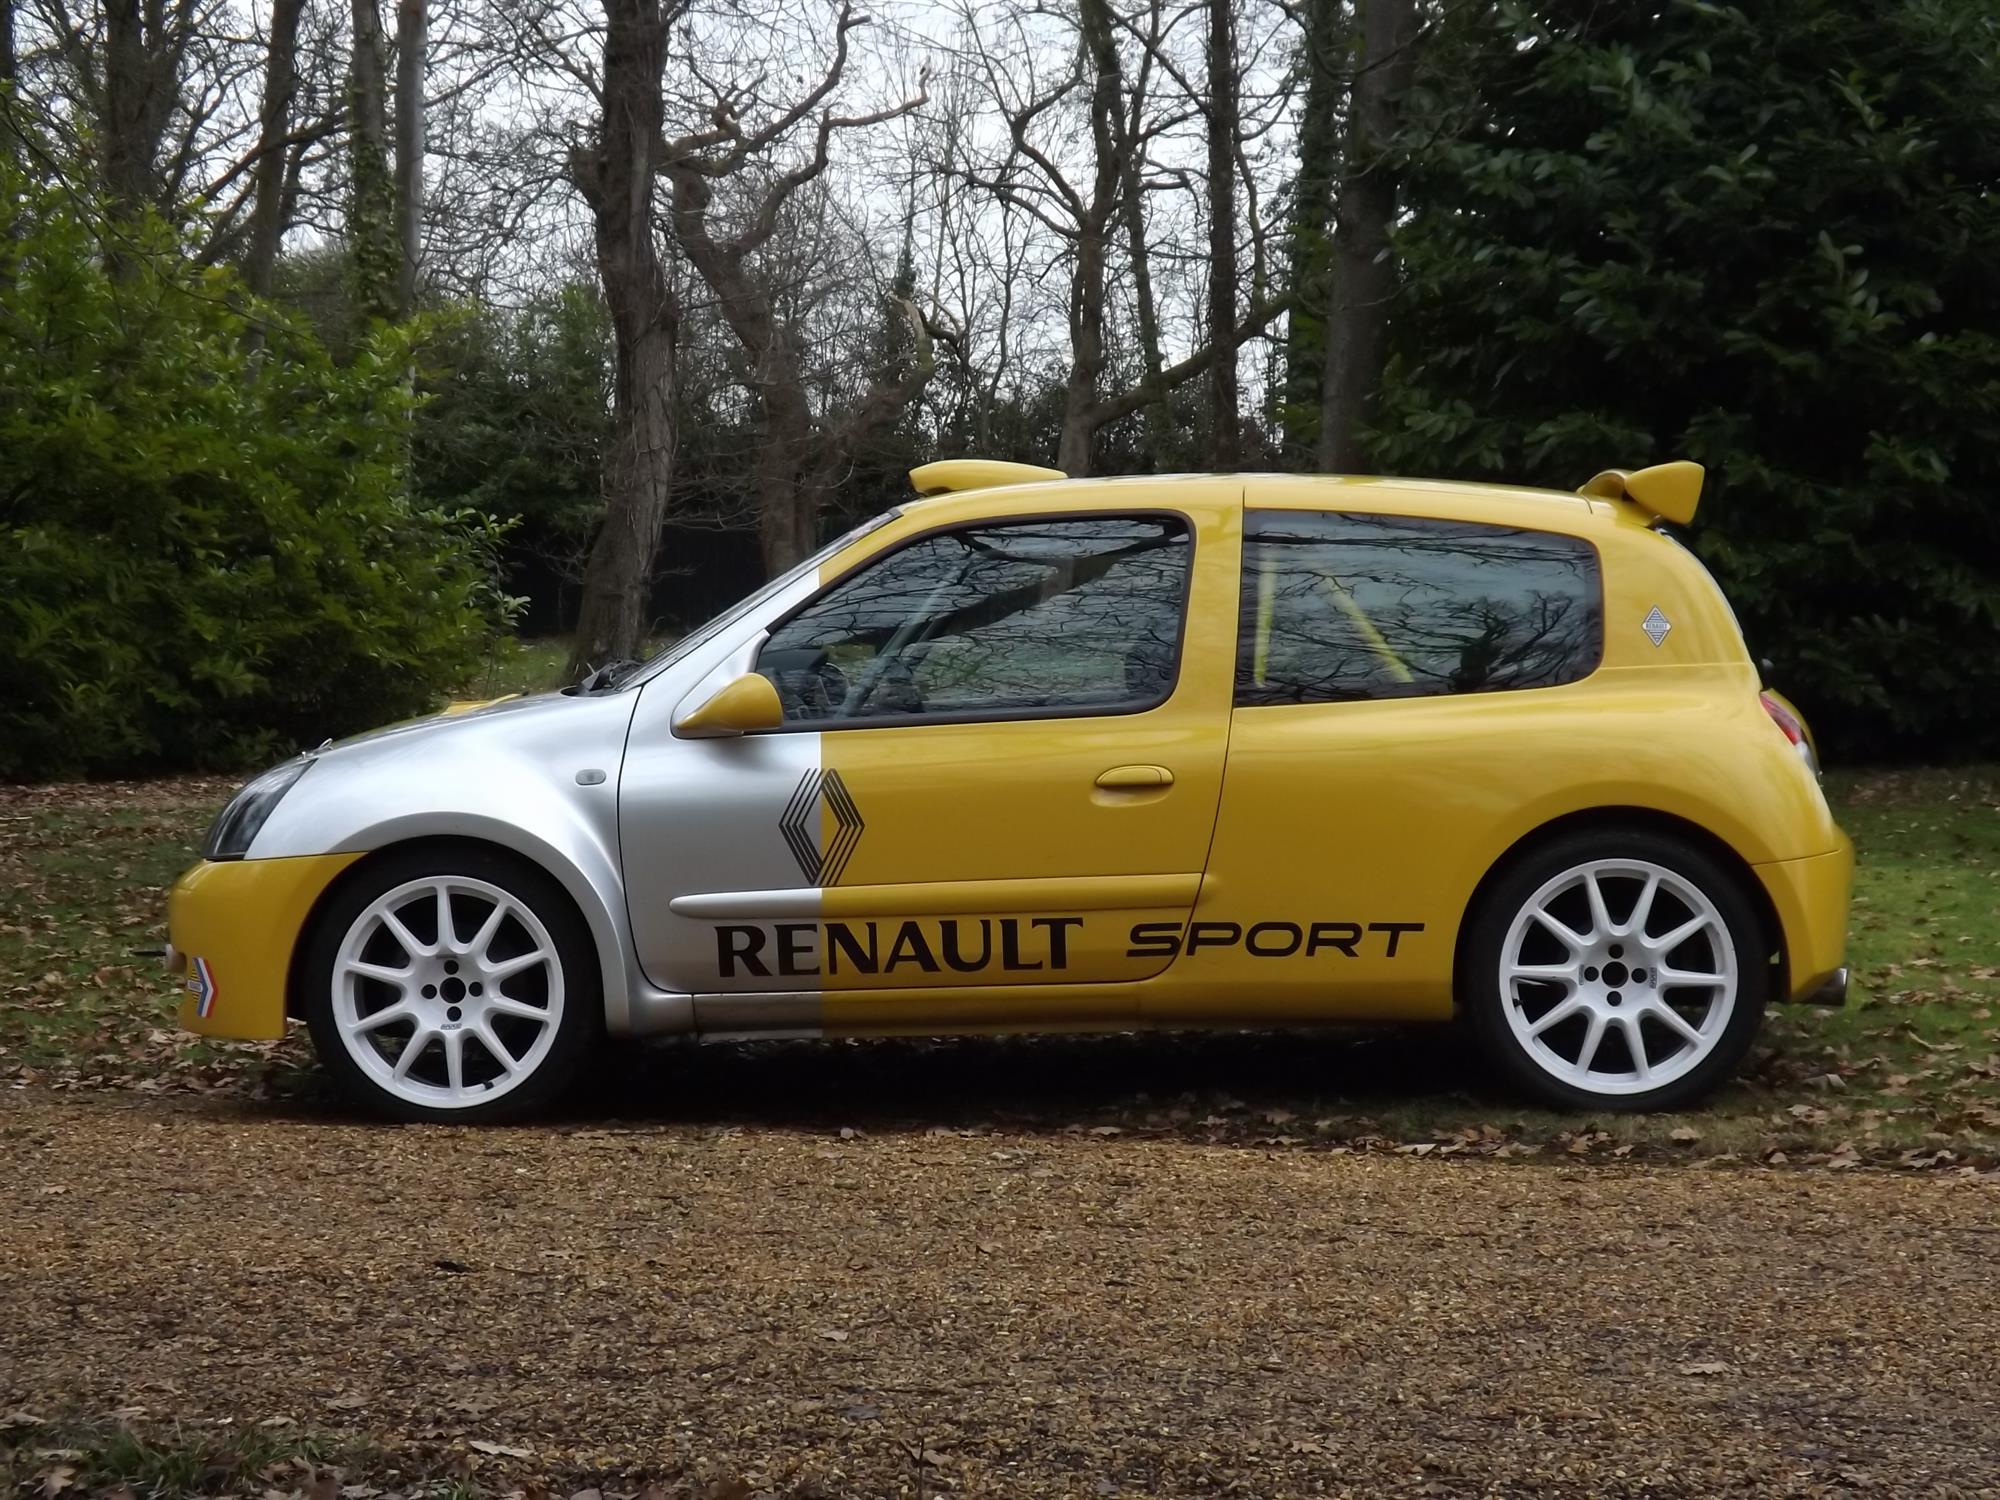 2000 Renault Clio 172 Prima Sport - Image 5 of 10